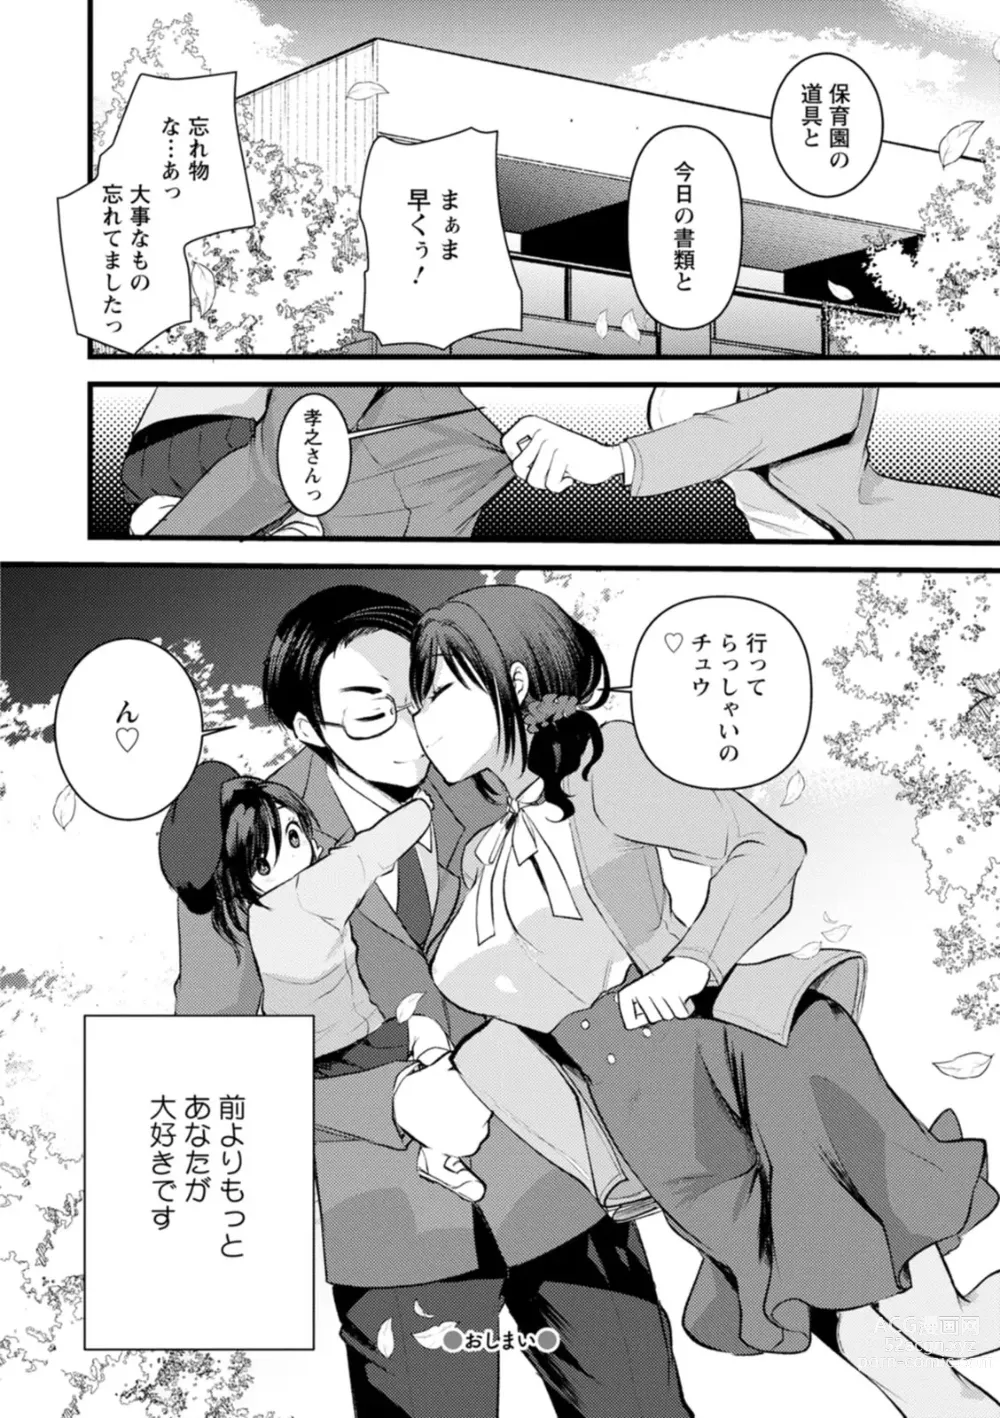 Page 191 of manga Niizuma san no Kojirase Ero Nikki